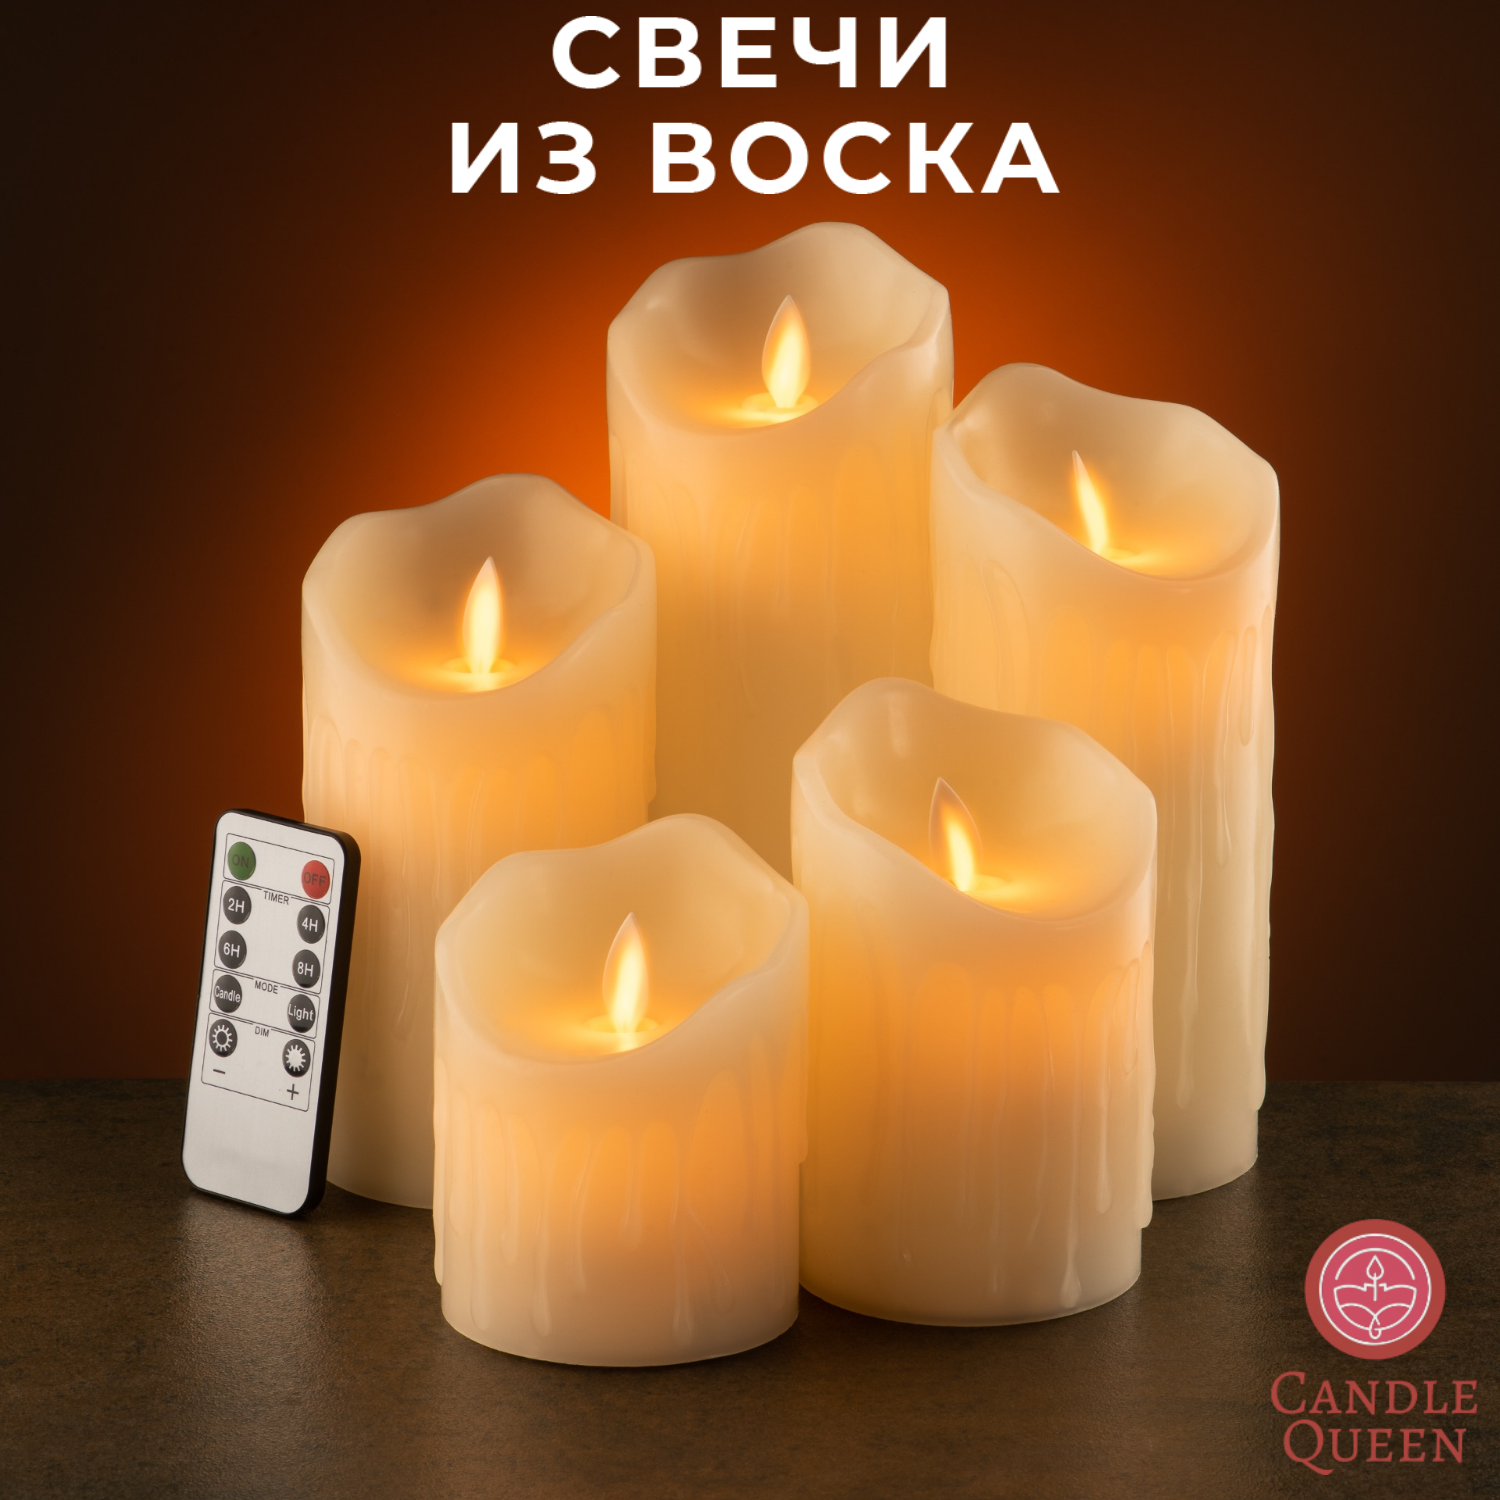 LED эко свечи диодные декоративные из воска CandleQueen R5SC153, 5 шт